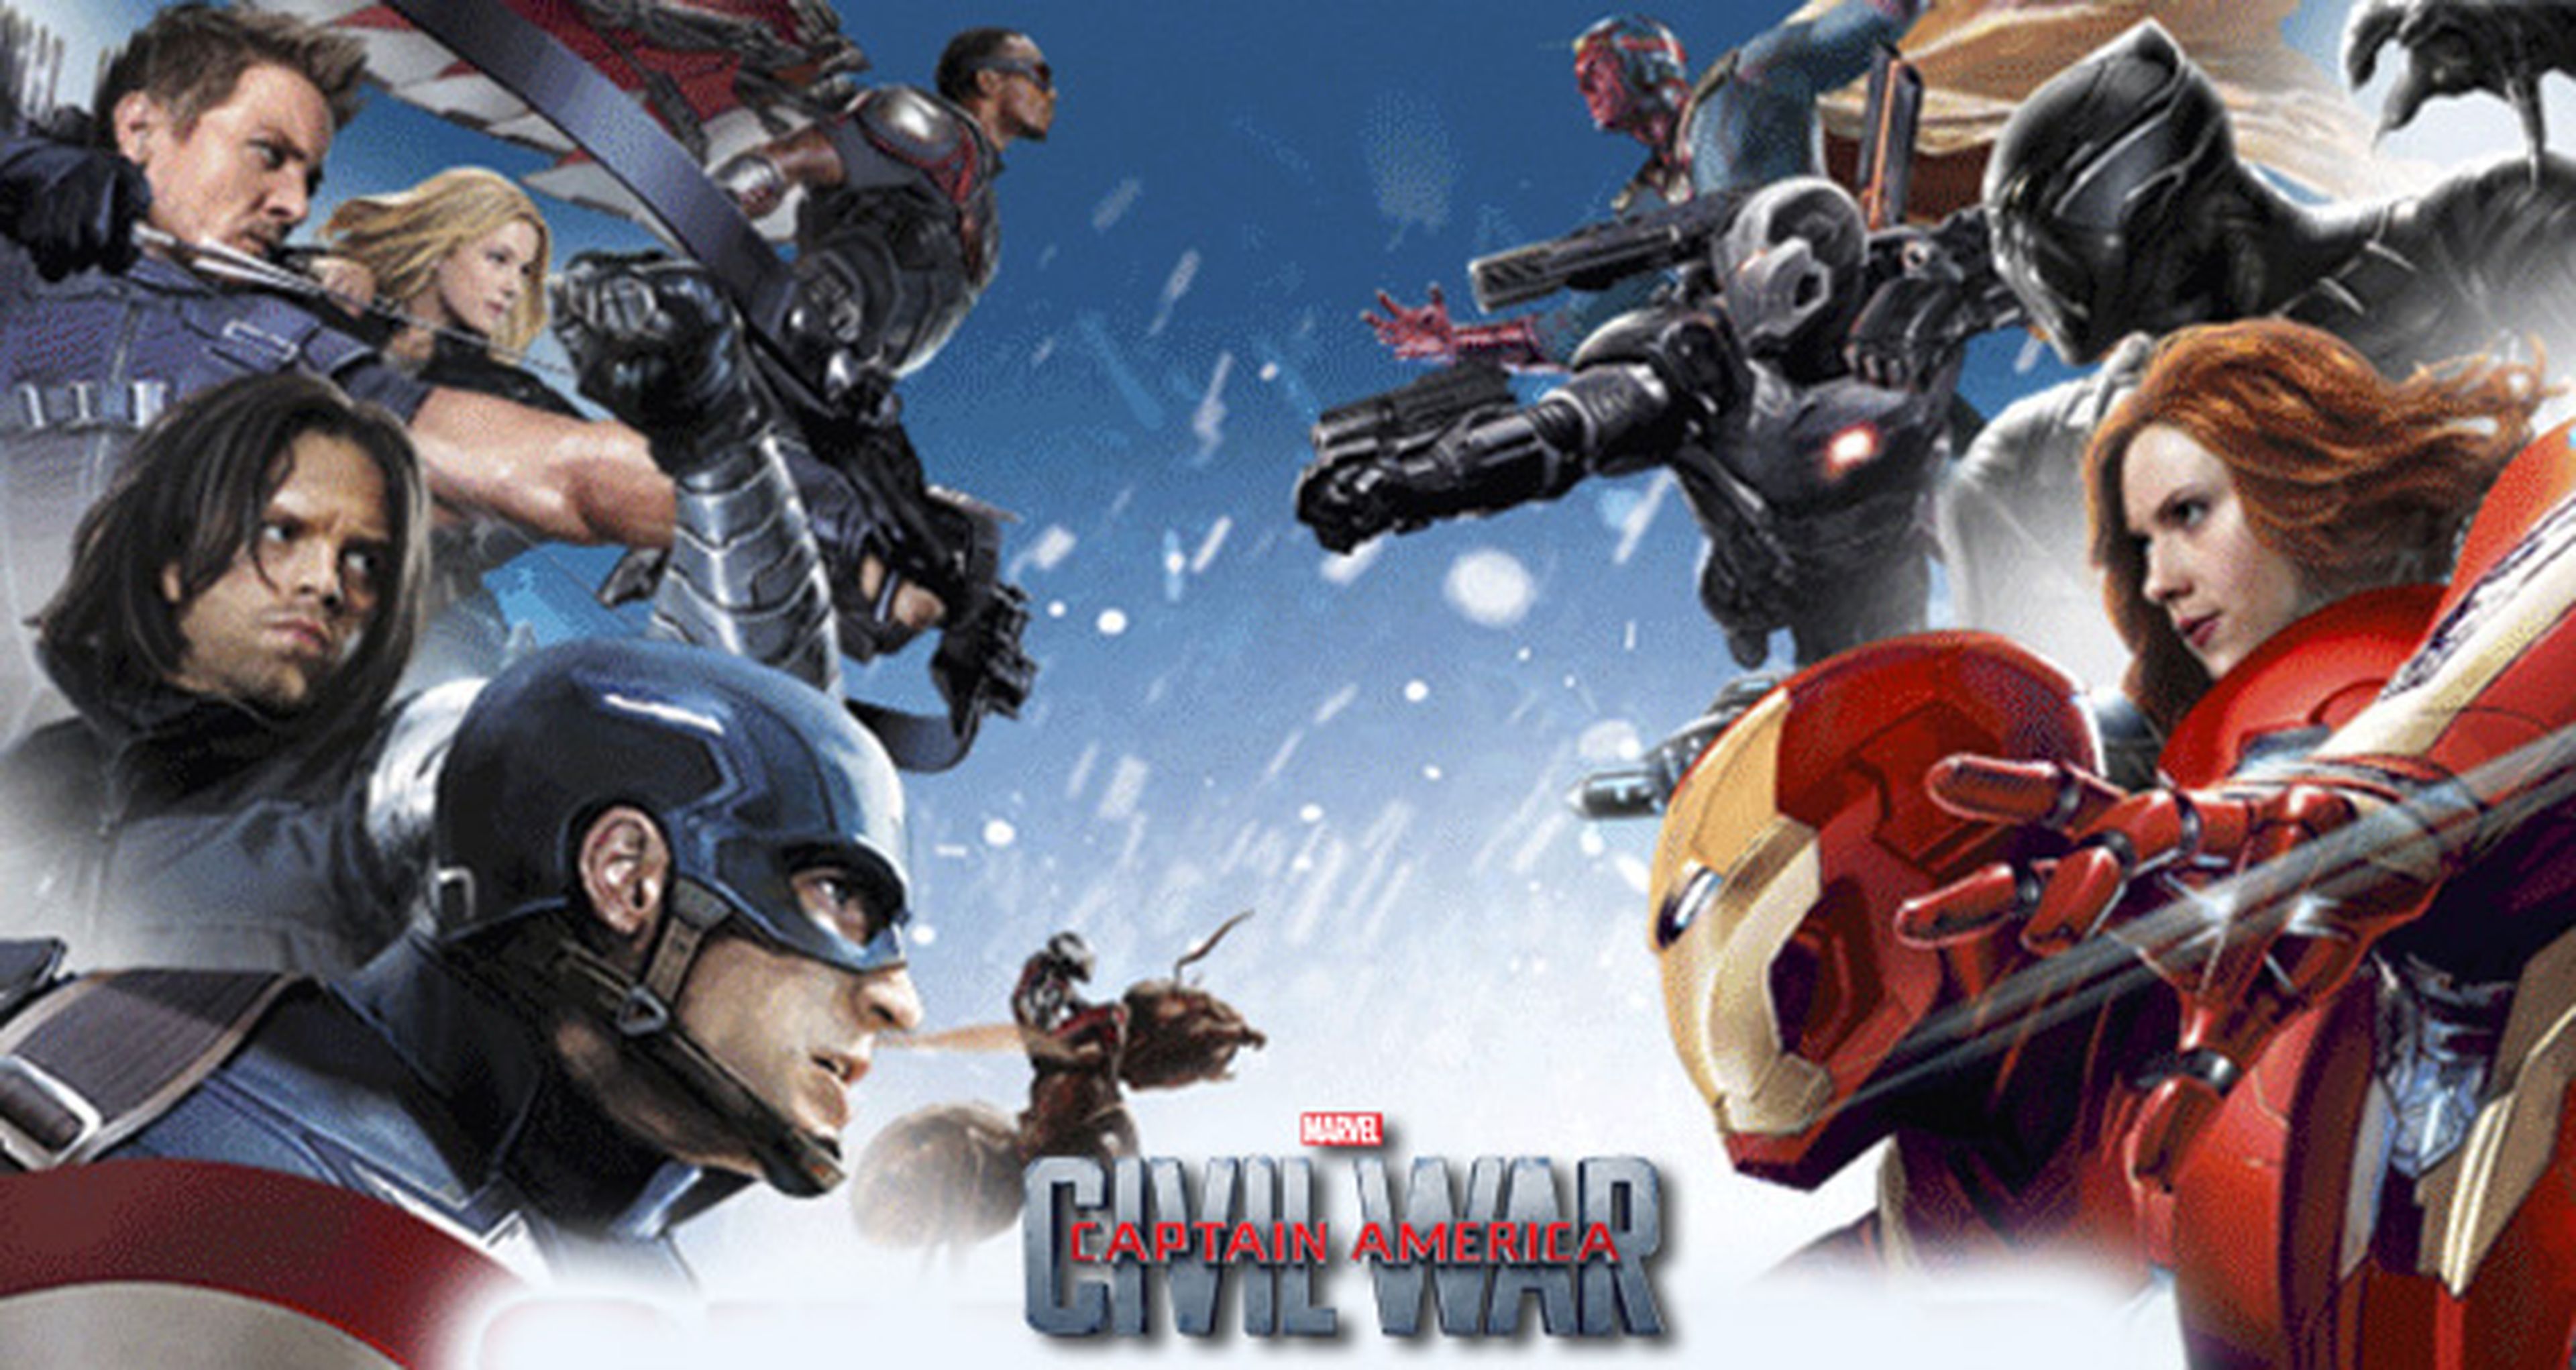 Capitán América: Civil War - Nuevos carteles promocionales con los dos bandos